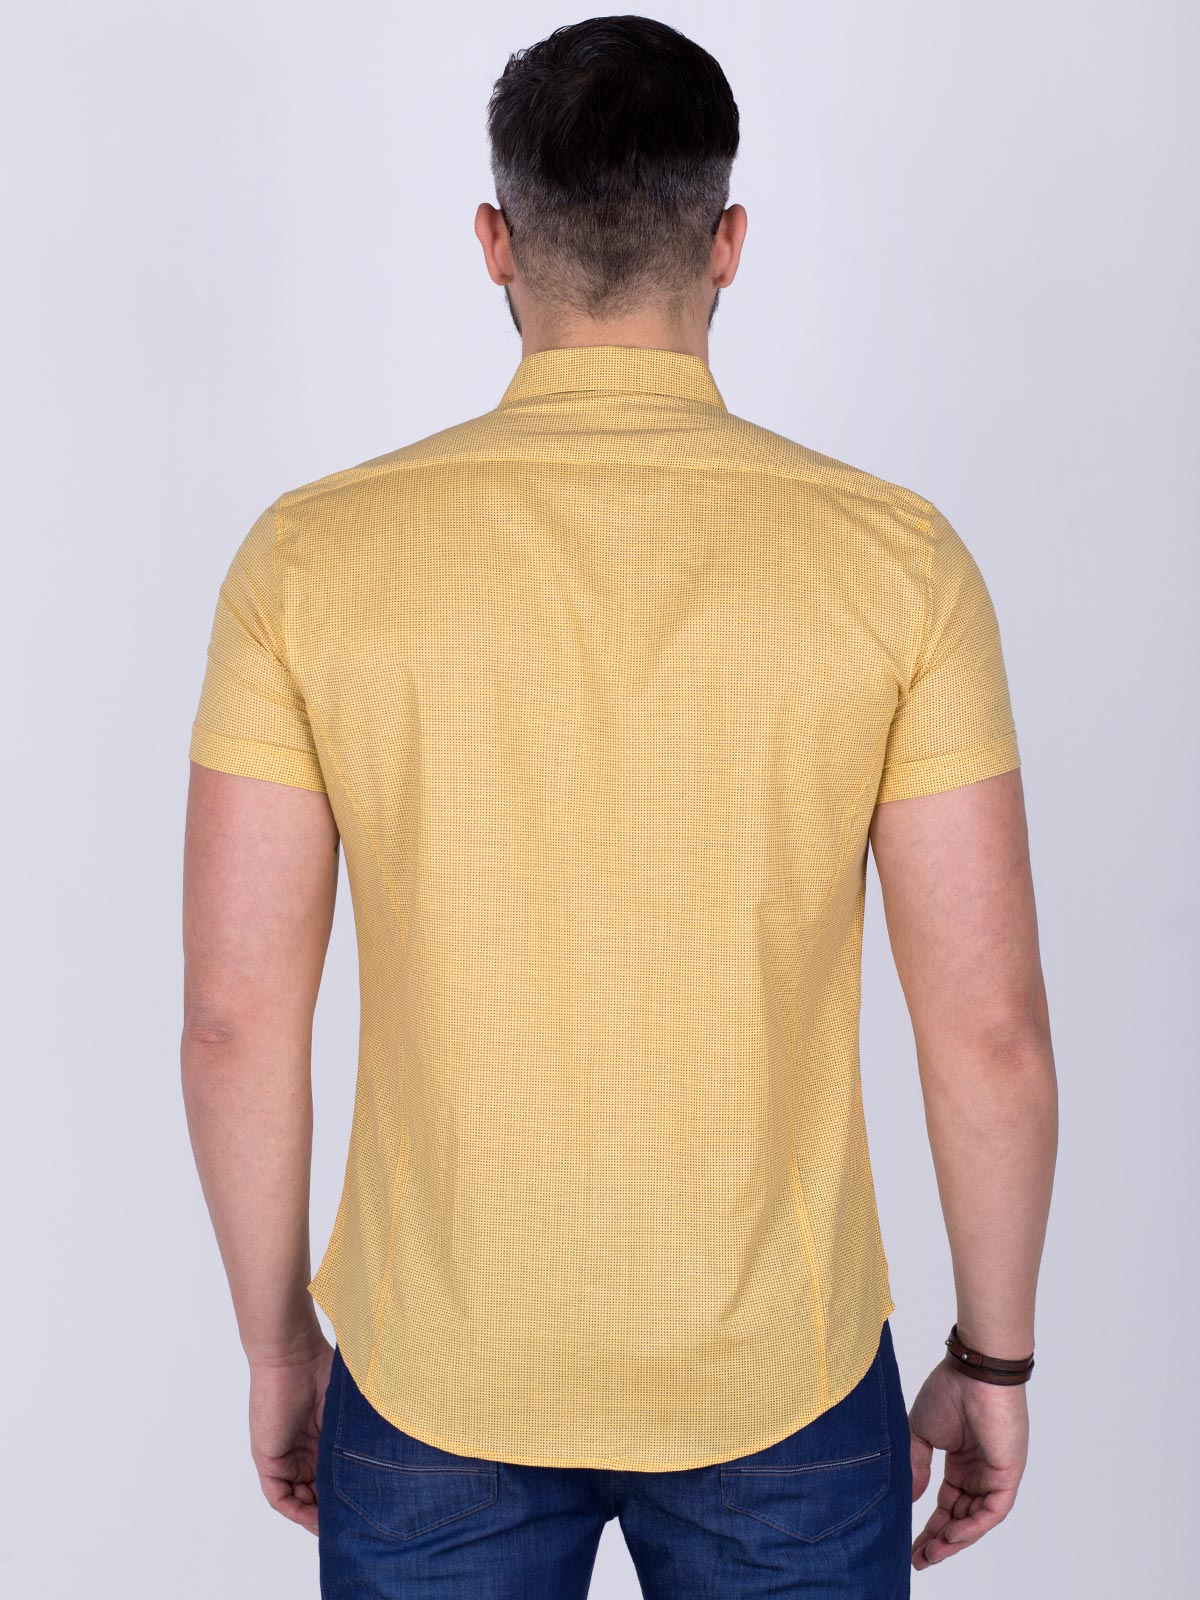 Κίτρινο εφαρμοστό πουκάμισο για μικρές - 80200 € 11.25 img2